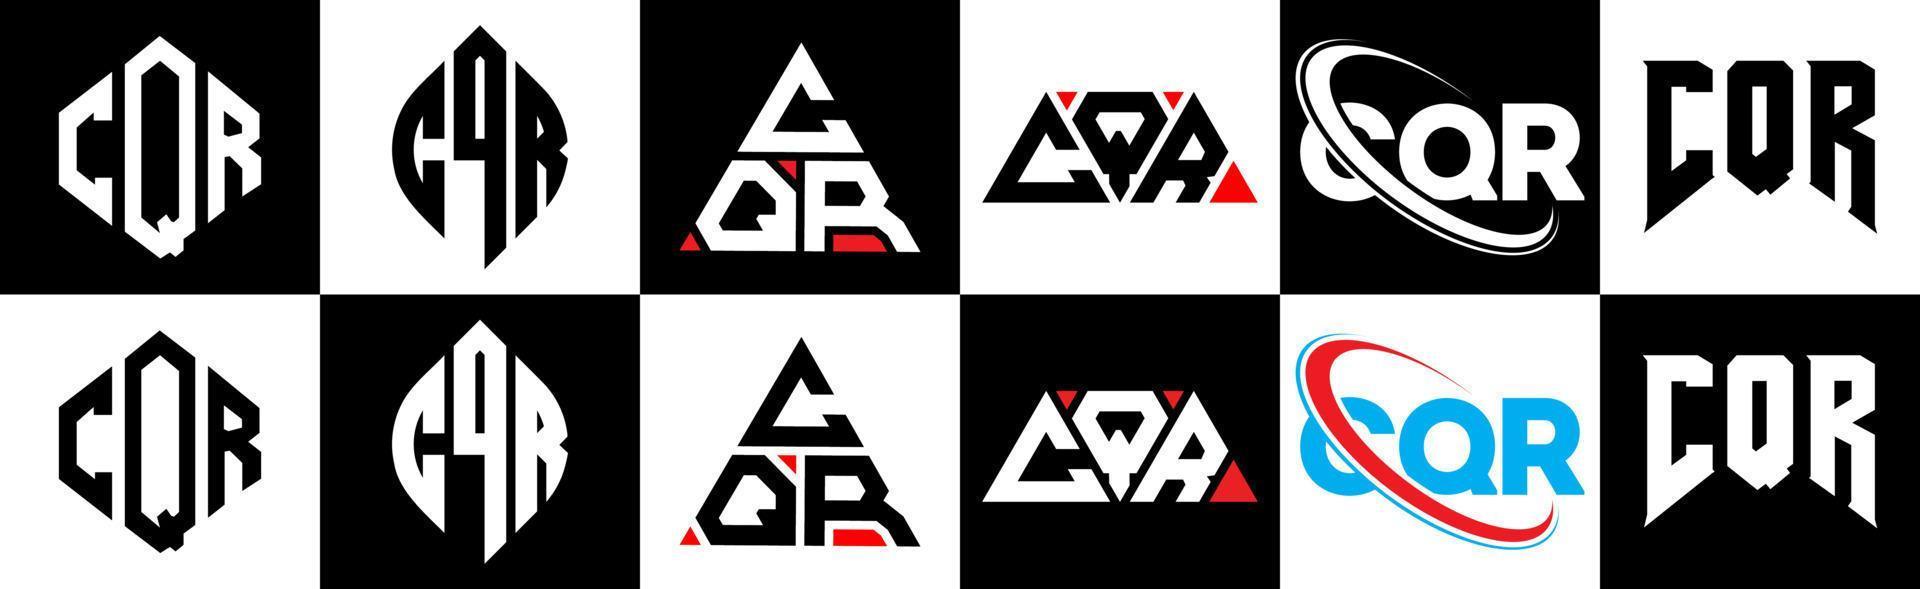 création de logo de lettre cqr en six styles. cqr polygone, cercle, triangle, hexagone, style plat et simple avec logo de lettre de variation de couleur noir et blanc dans un plan de travail. cqr logo minimaliste et classique vecteur